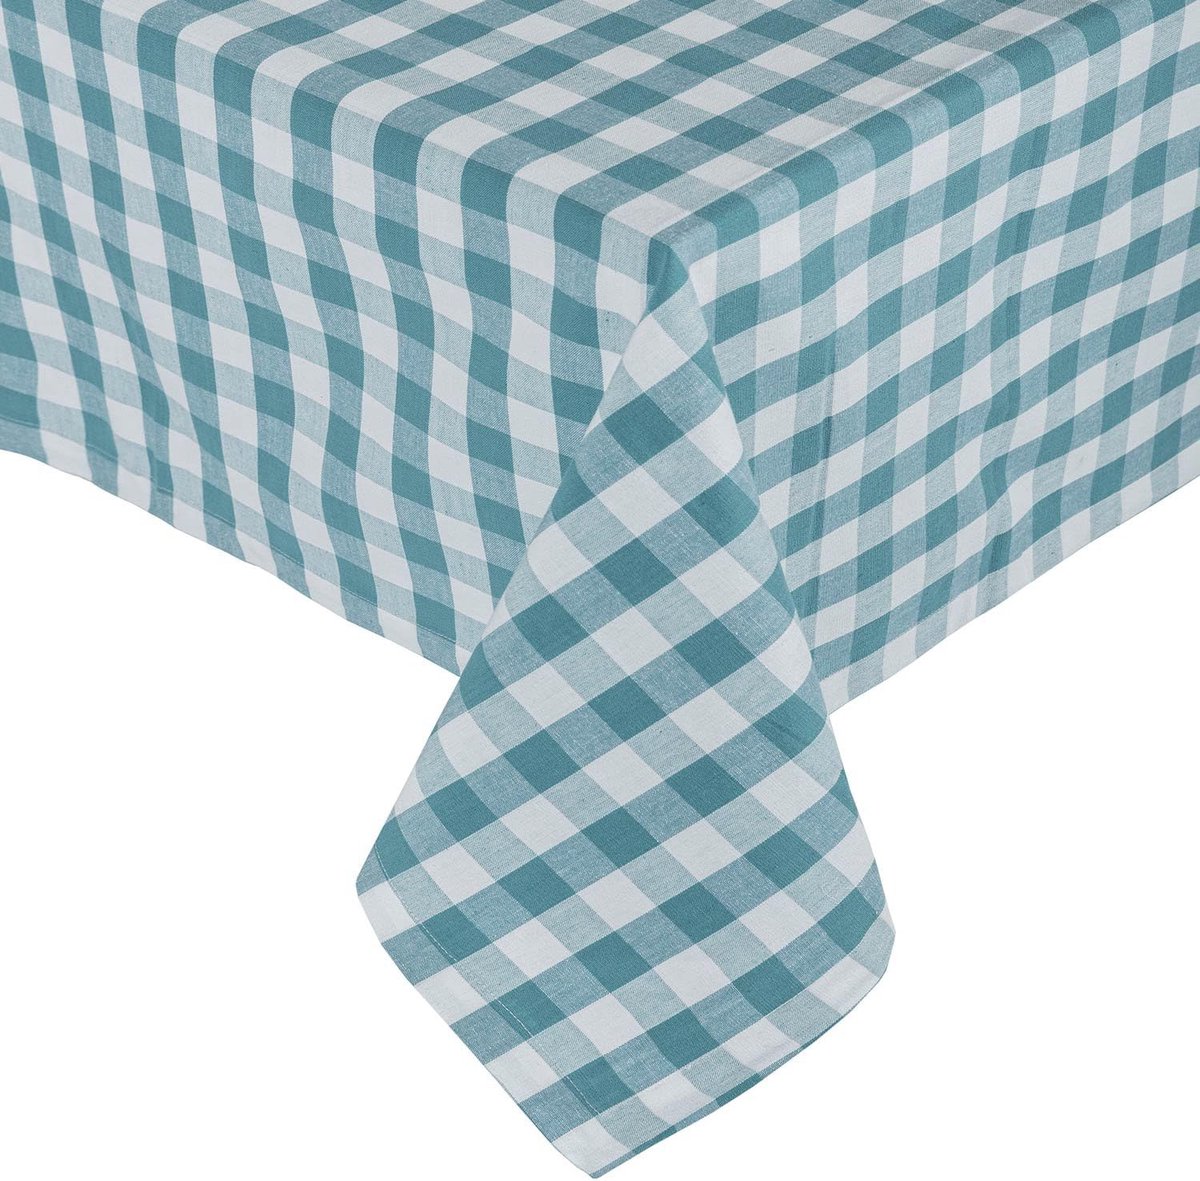 Geruit tafelkleed, blauw, Gingham tafelkleed van 100% katoen met ruitpatroon, hoekig tafelkleed voor eettafel of keukentafel, 137 x 228 cm